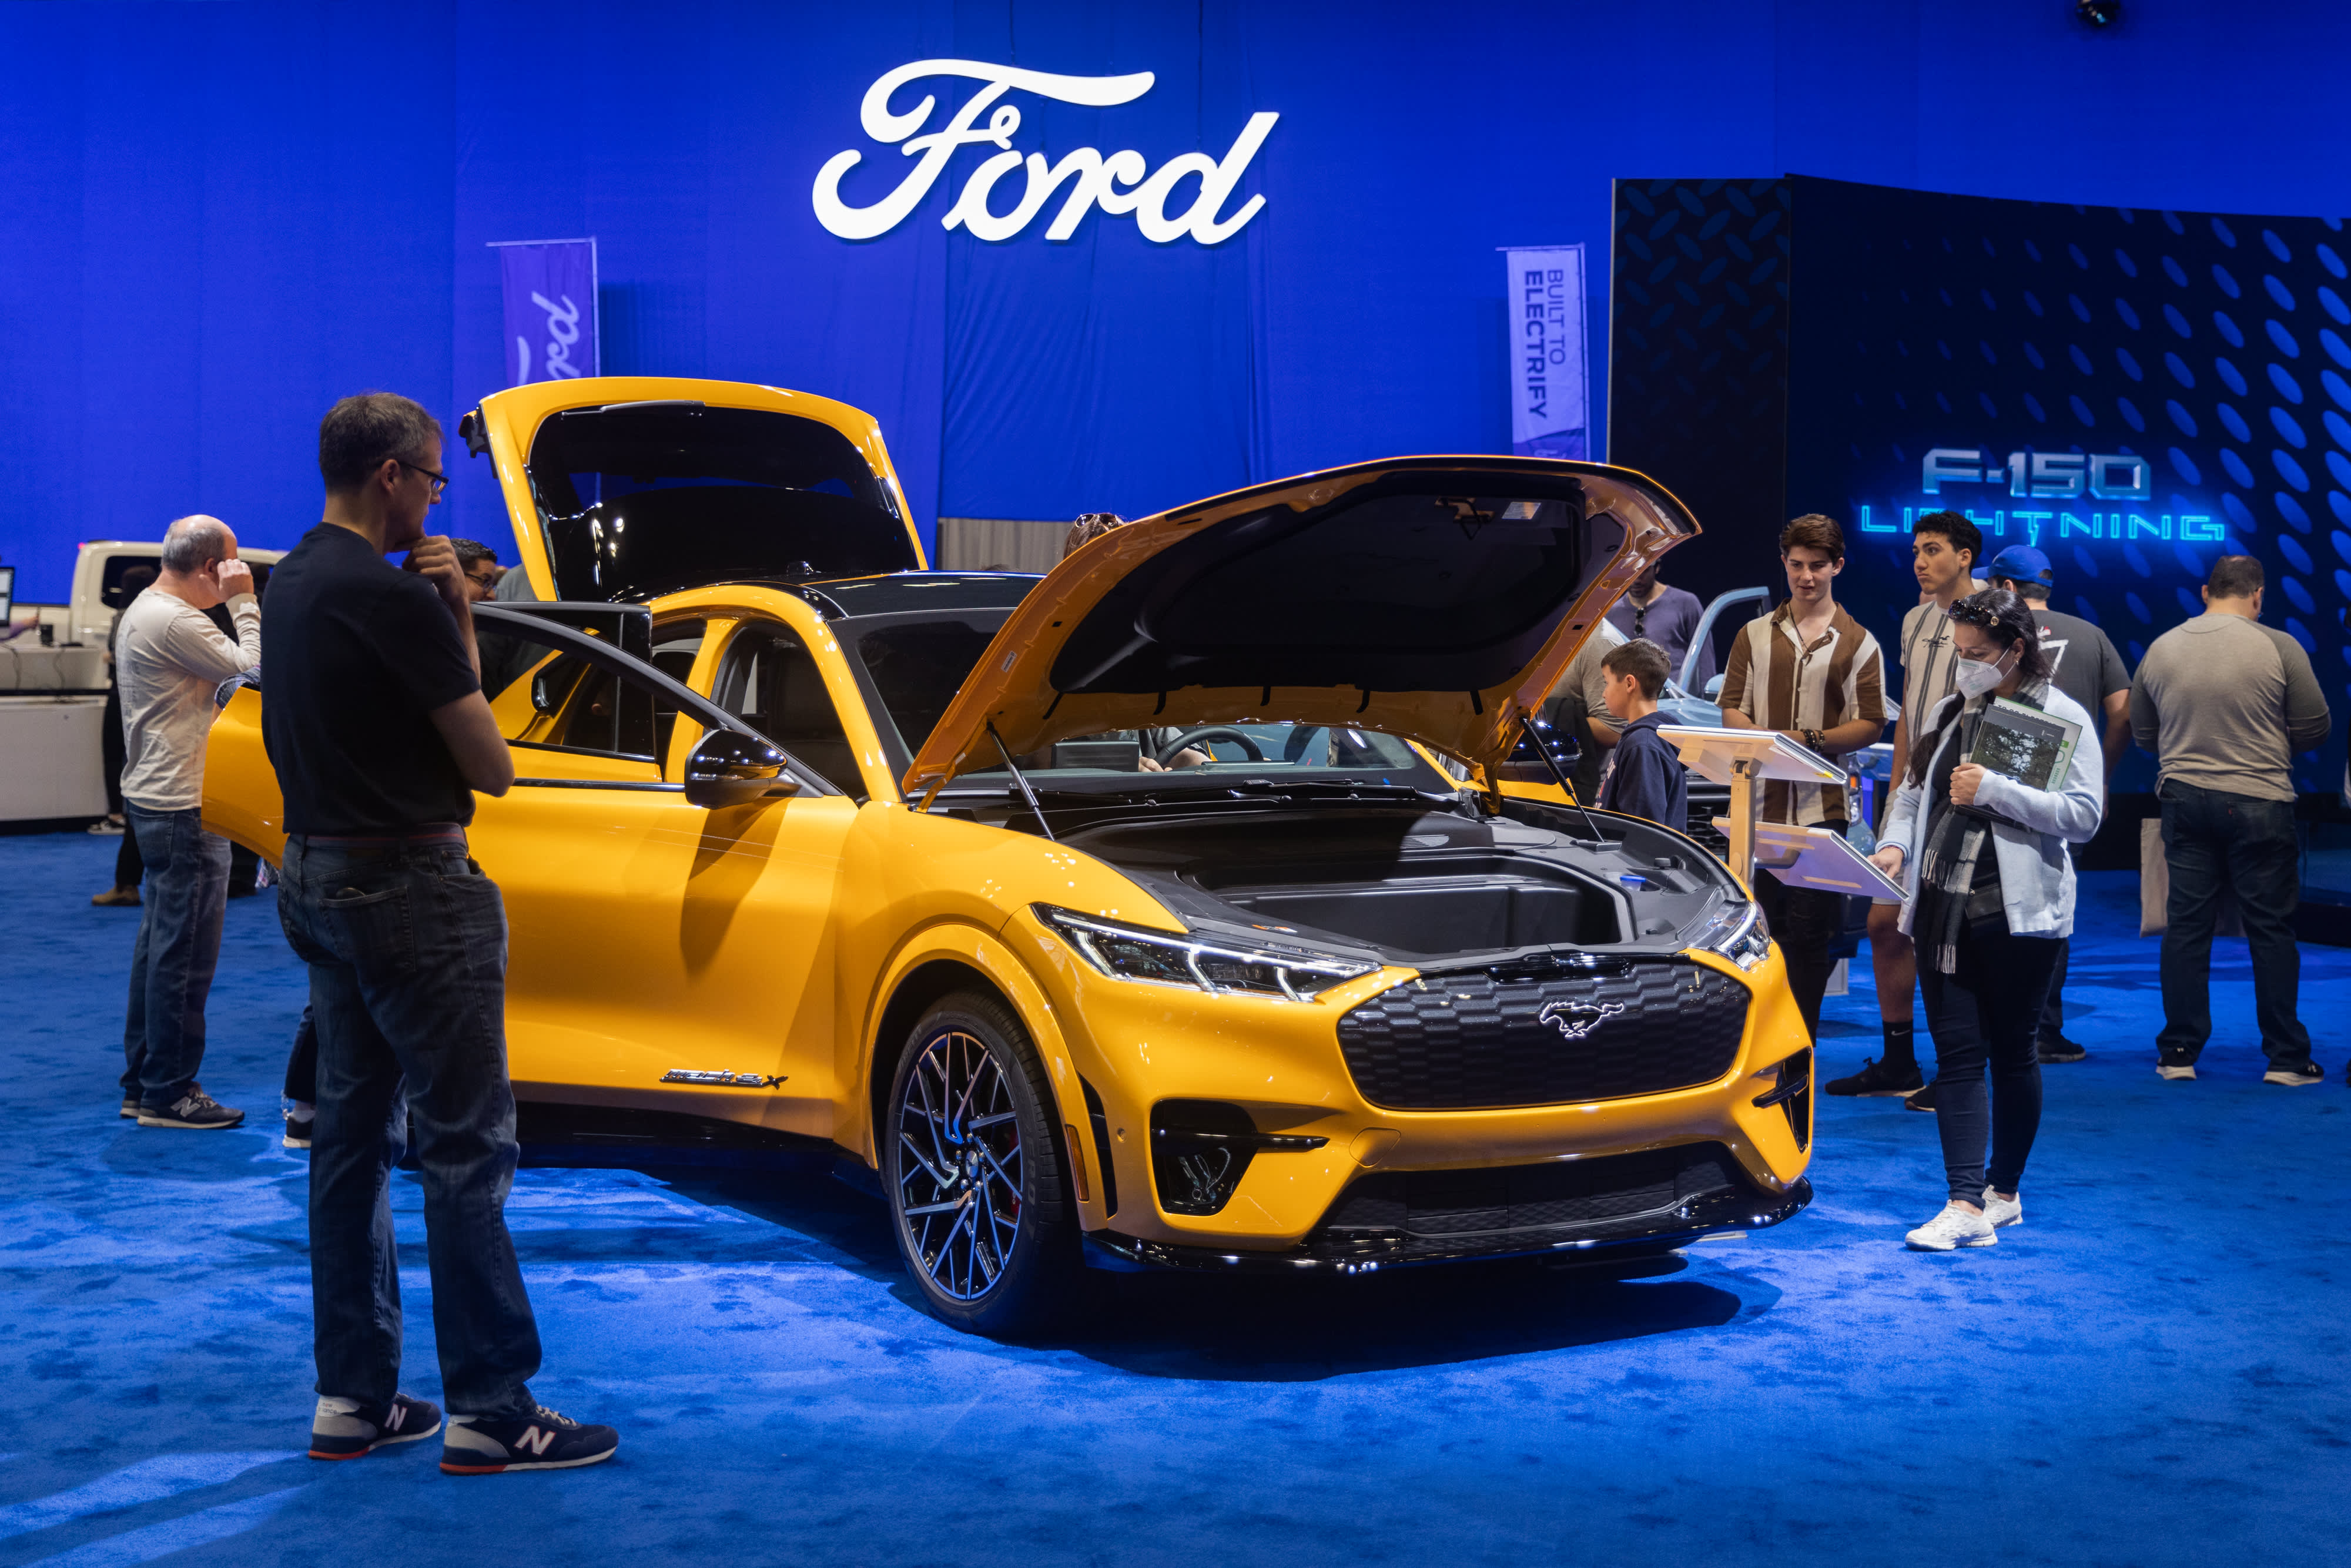 Los recortes de precios de los vehículos eléctricos de Ford podrían ejercer presión sobre la rentabilidad, que es un obstáculo que el fabricante de automóviles debe abordar.